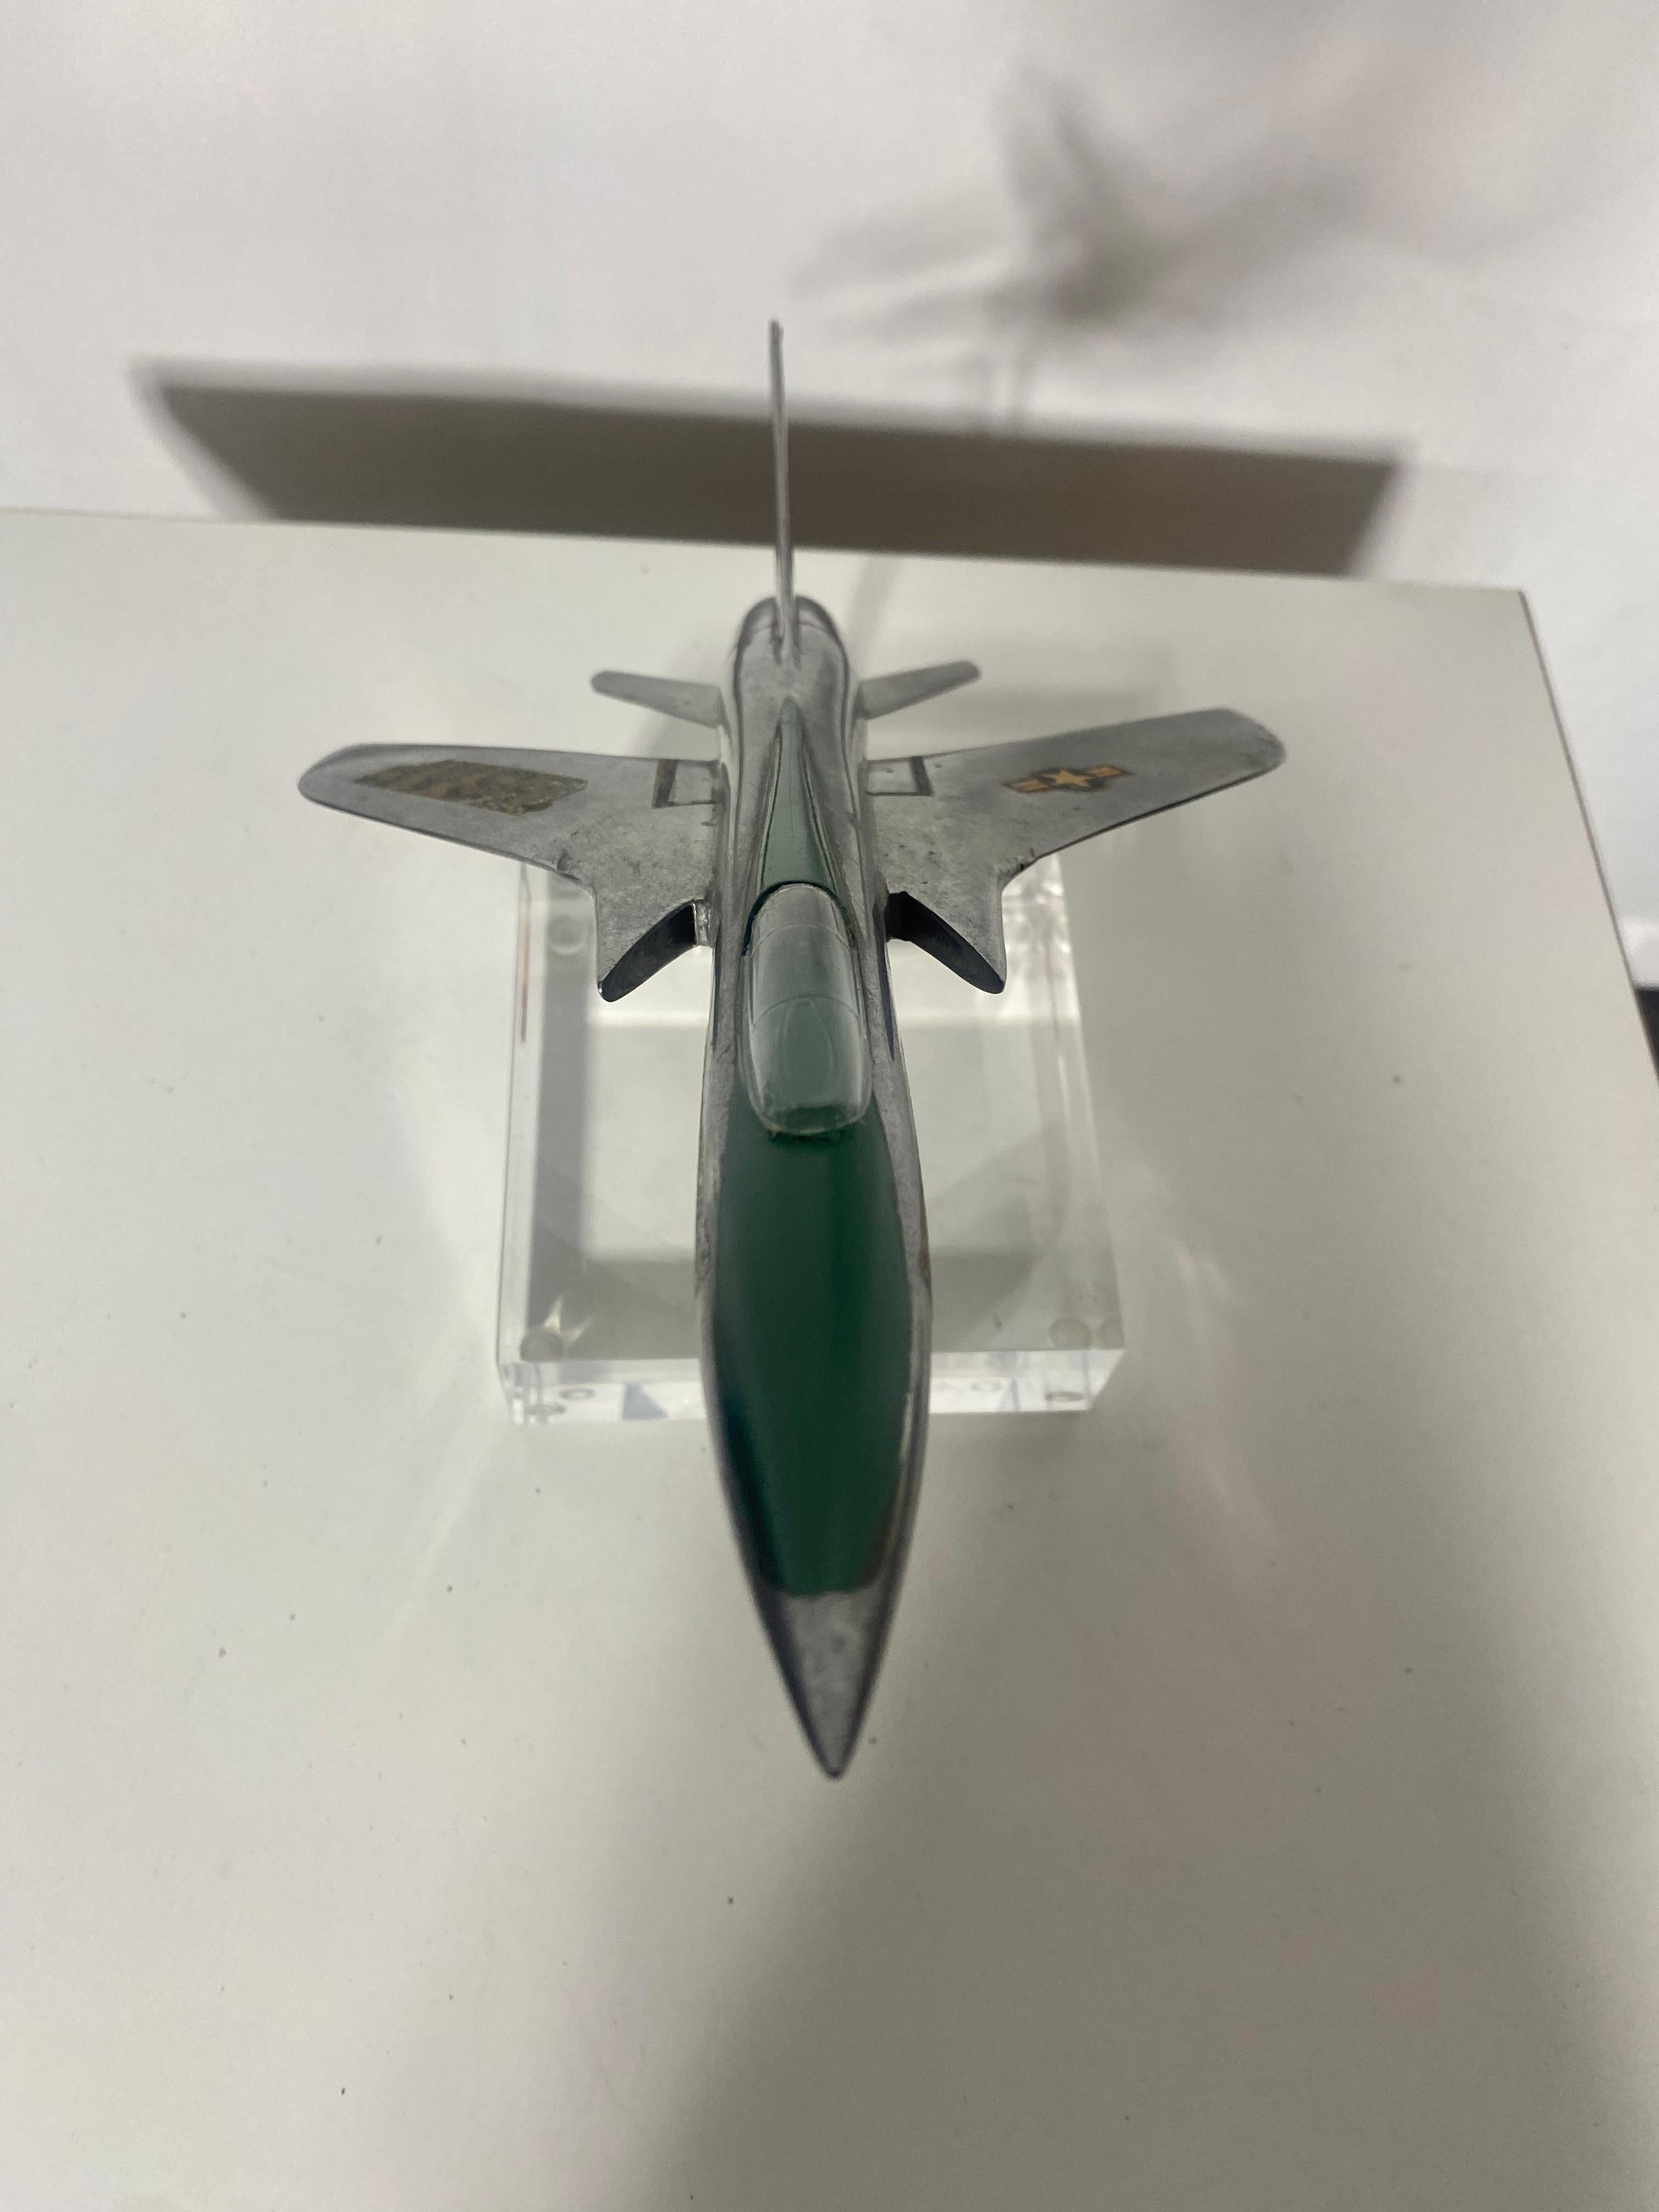 Jet de combat en aluminium et lucite de la modernité du milieu du siècle . Maquette d'avion THUNDERCHEIF F-105 / Accessoire de bureau / Sculpture, réalisée par Topping Models.